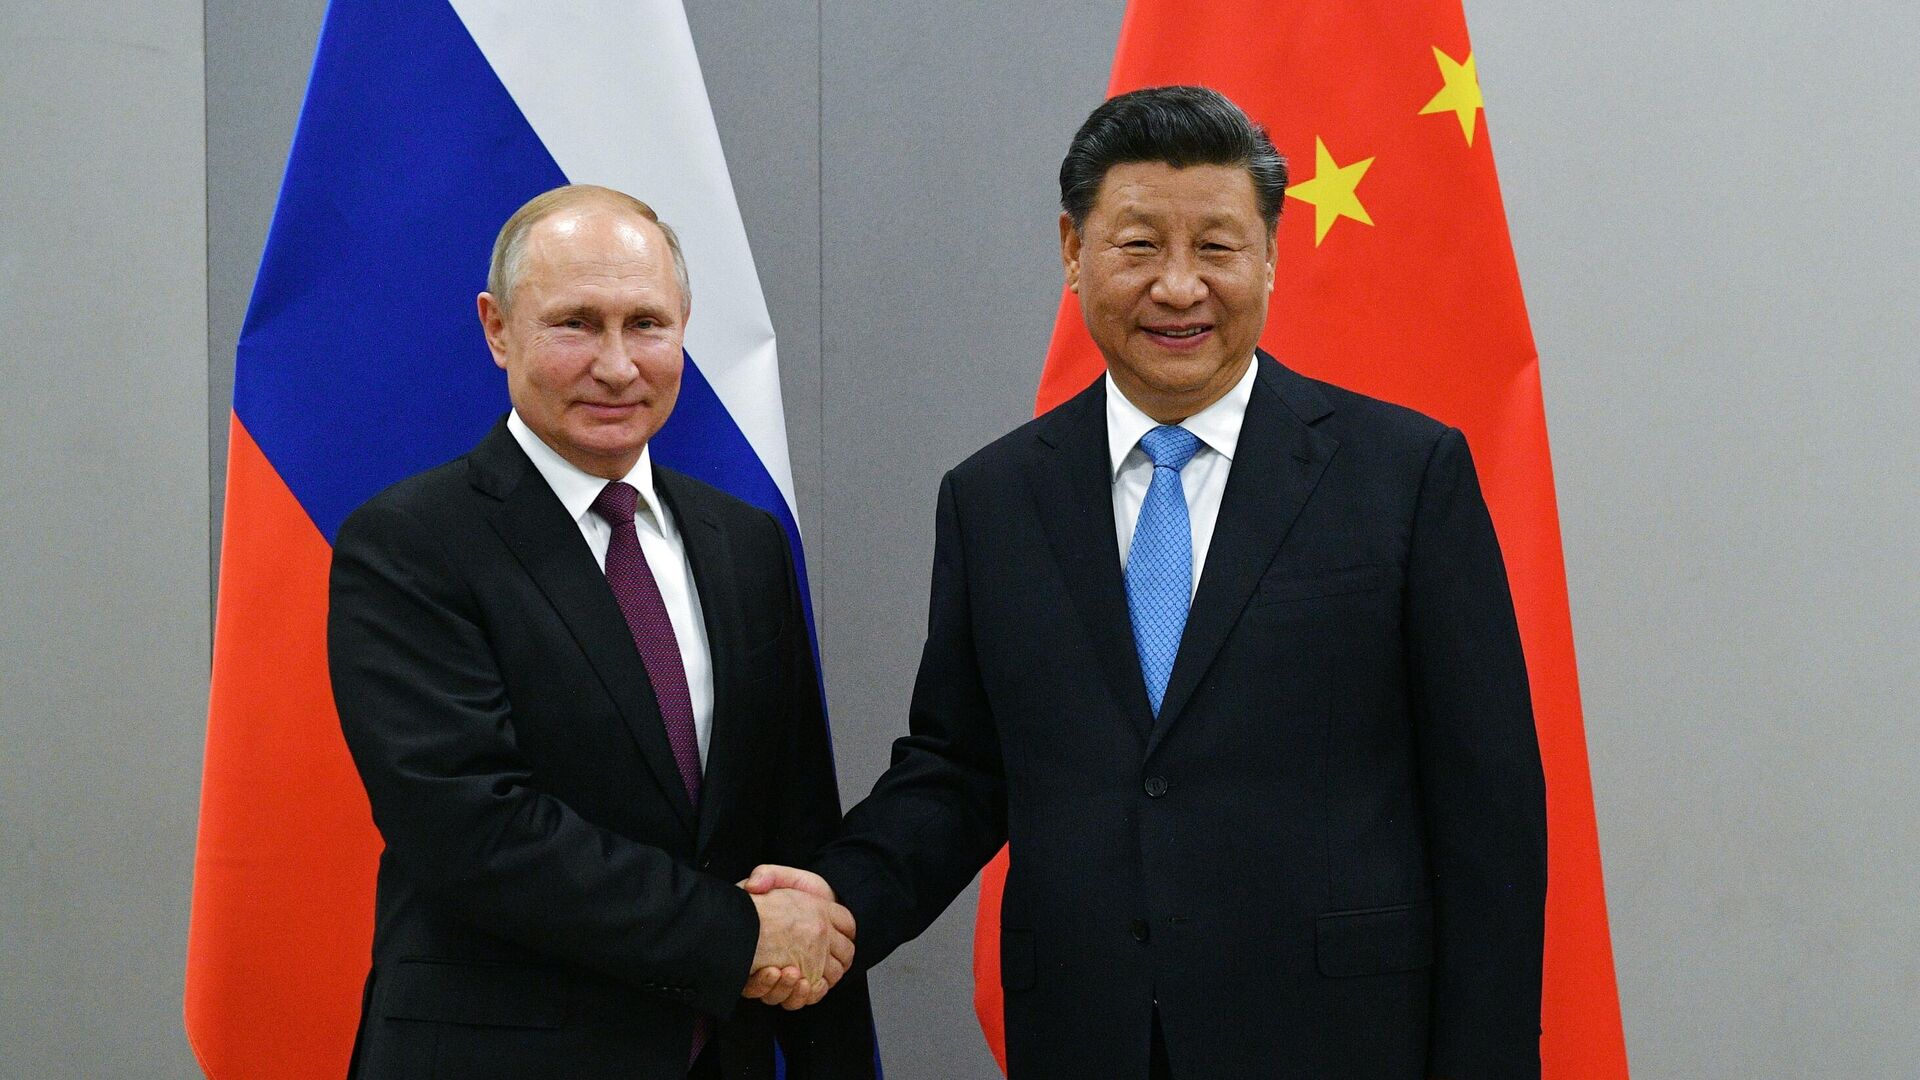 Китай готов наращивать стратегическое взаимодействие с Россией - Си Цзиньпин 